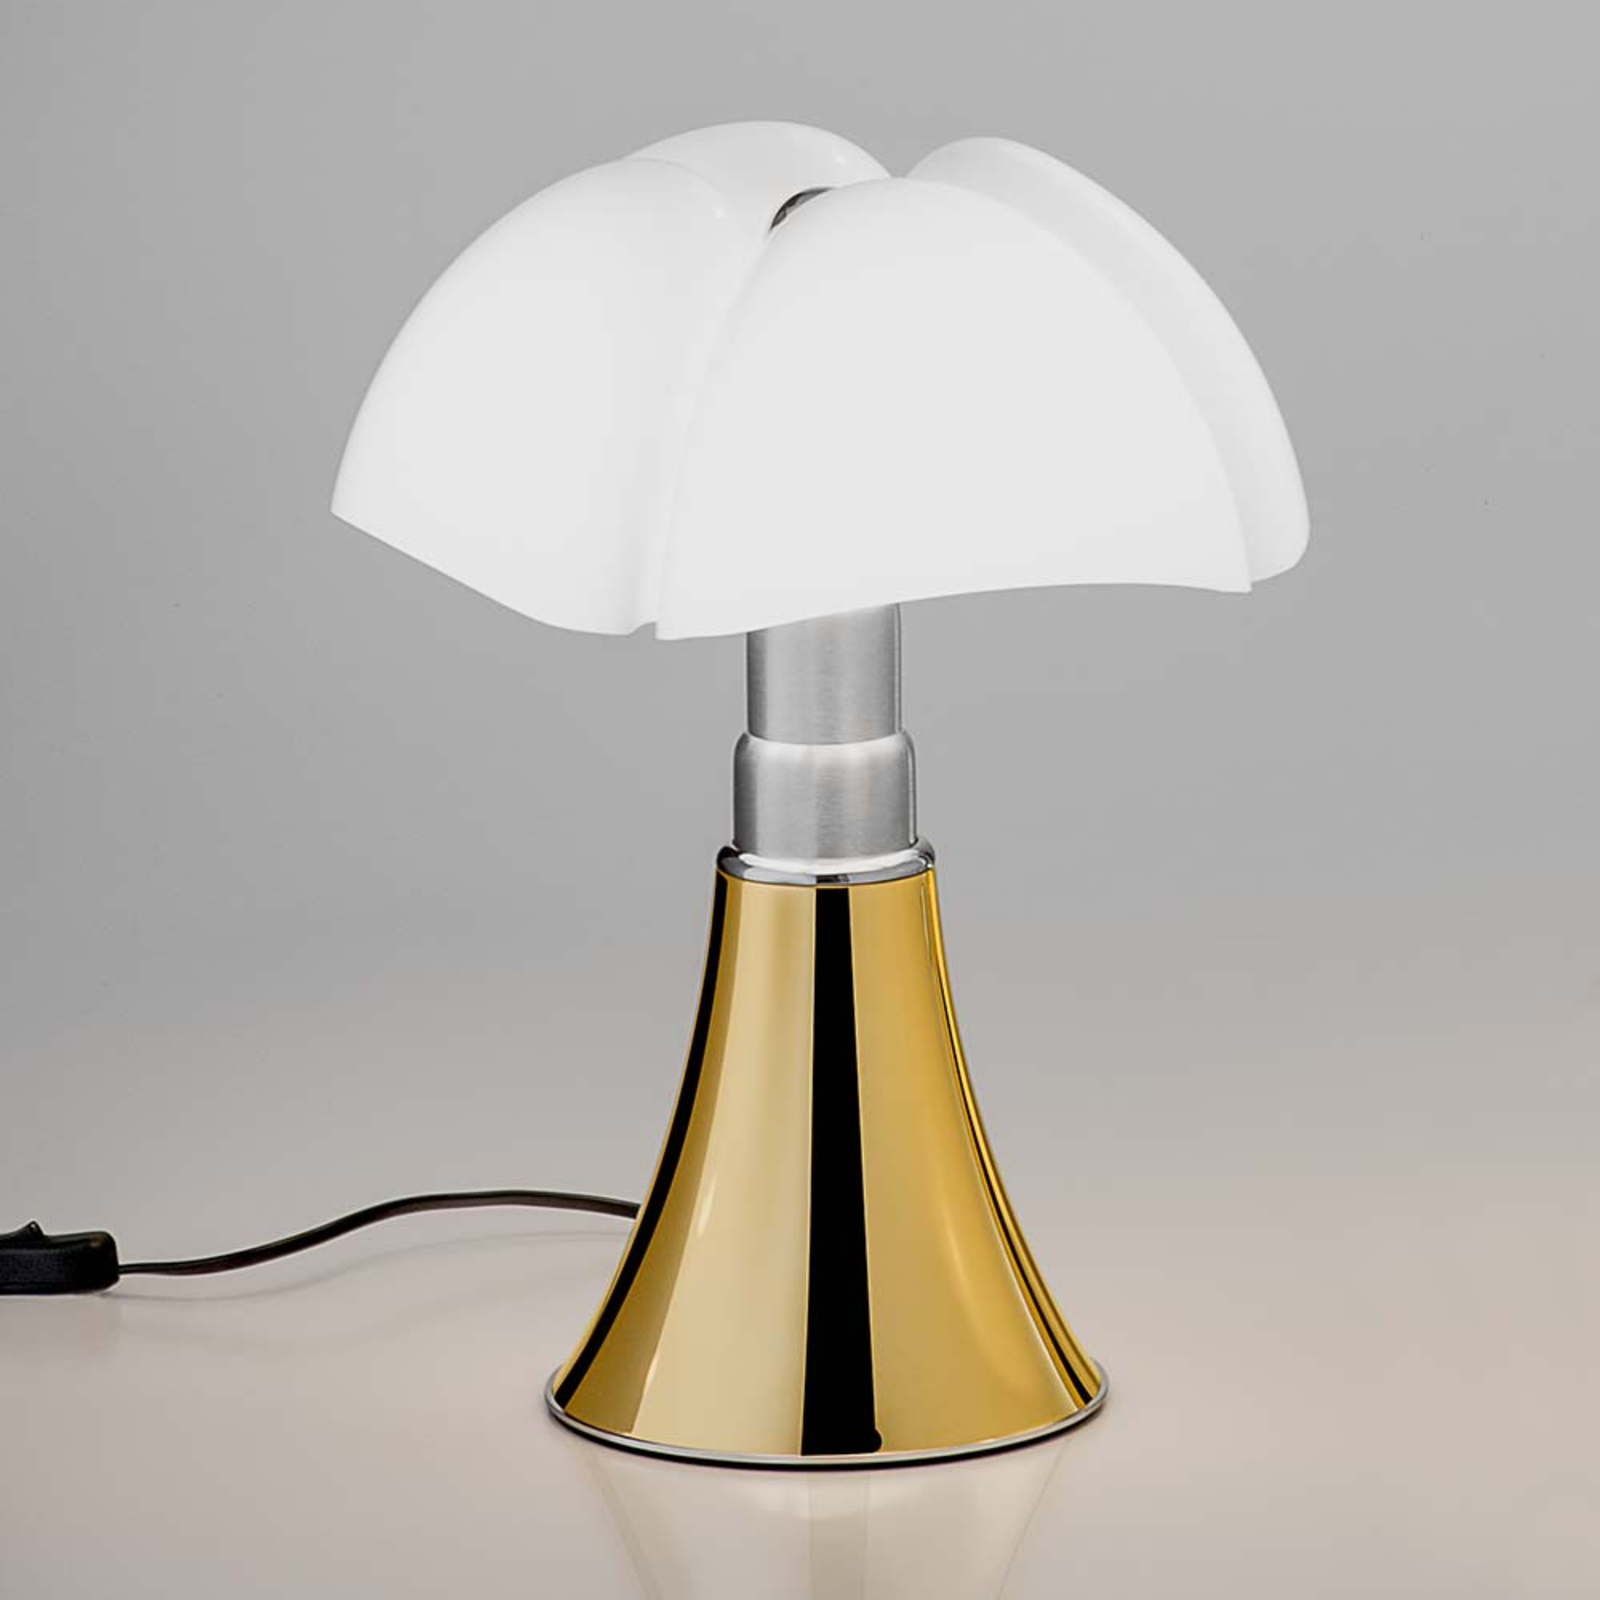 Martinelli Luce Minipipistrello lámpara de mesa oro